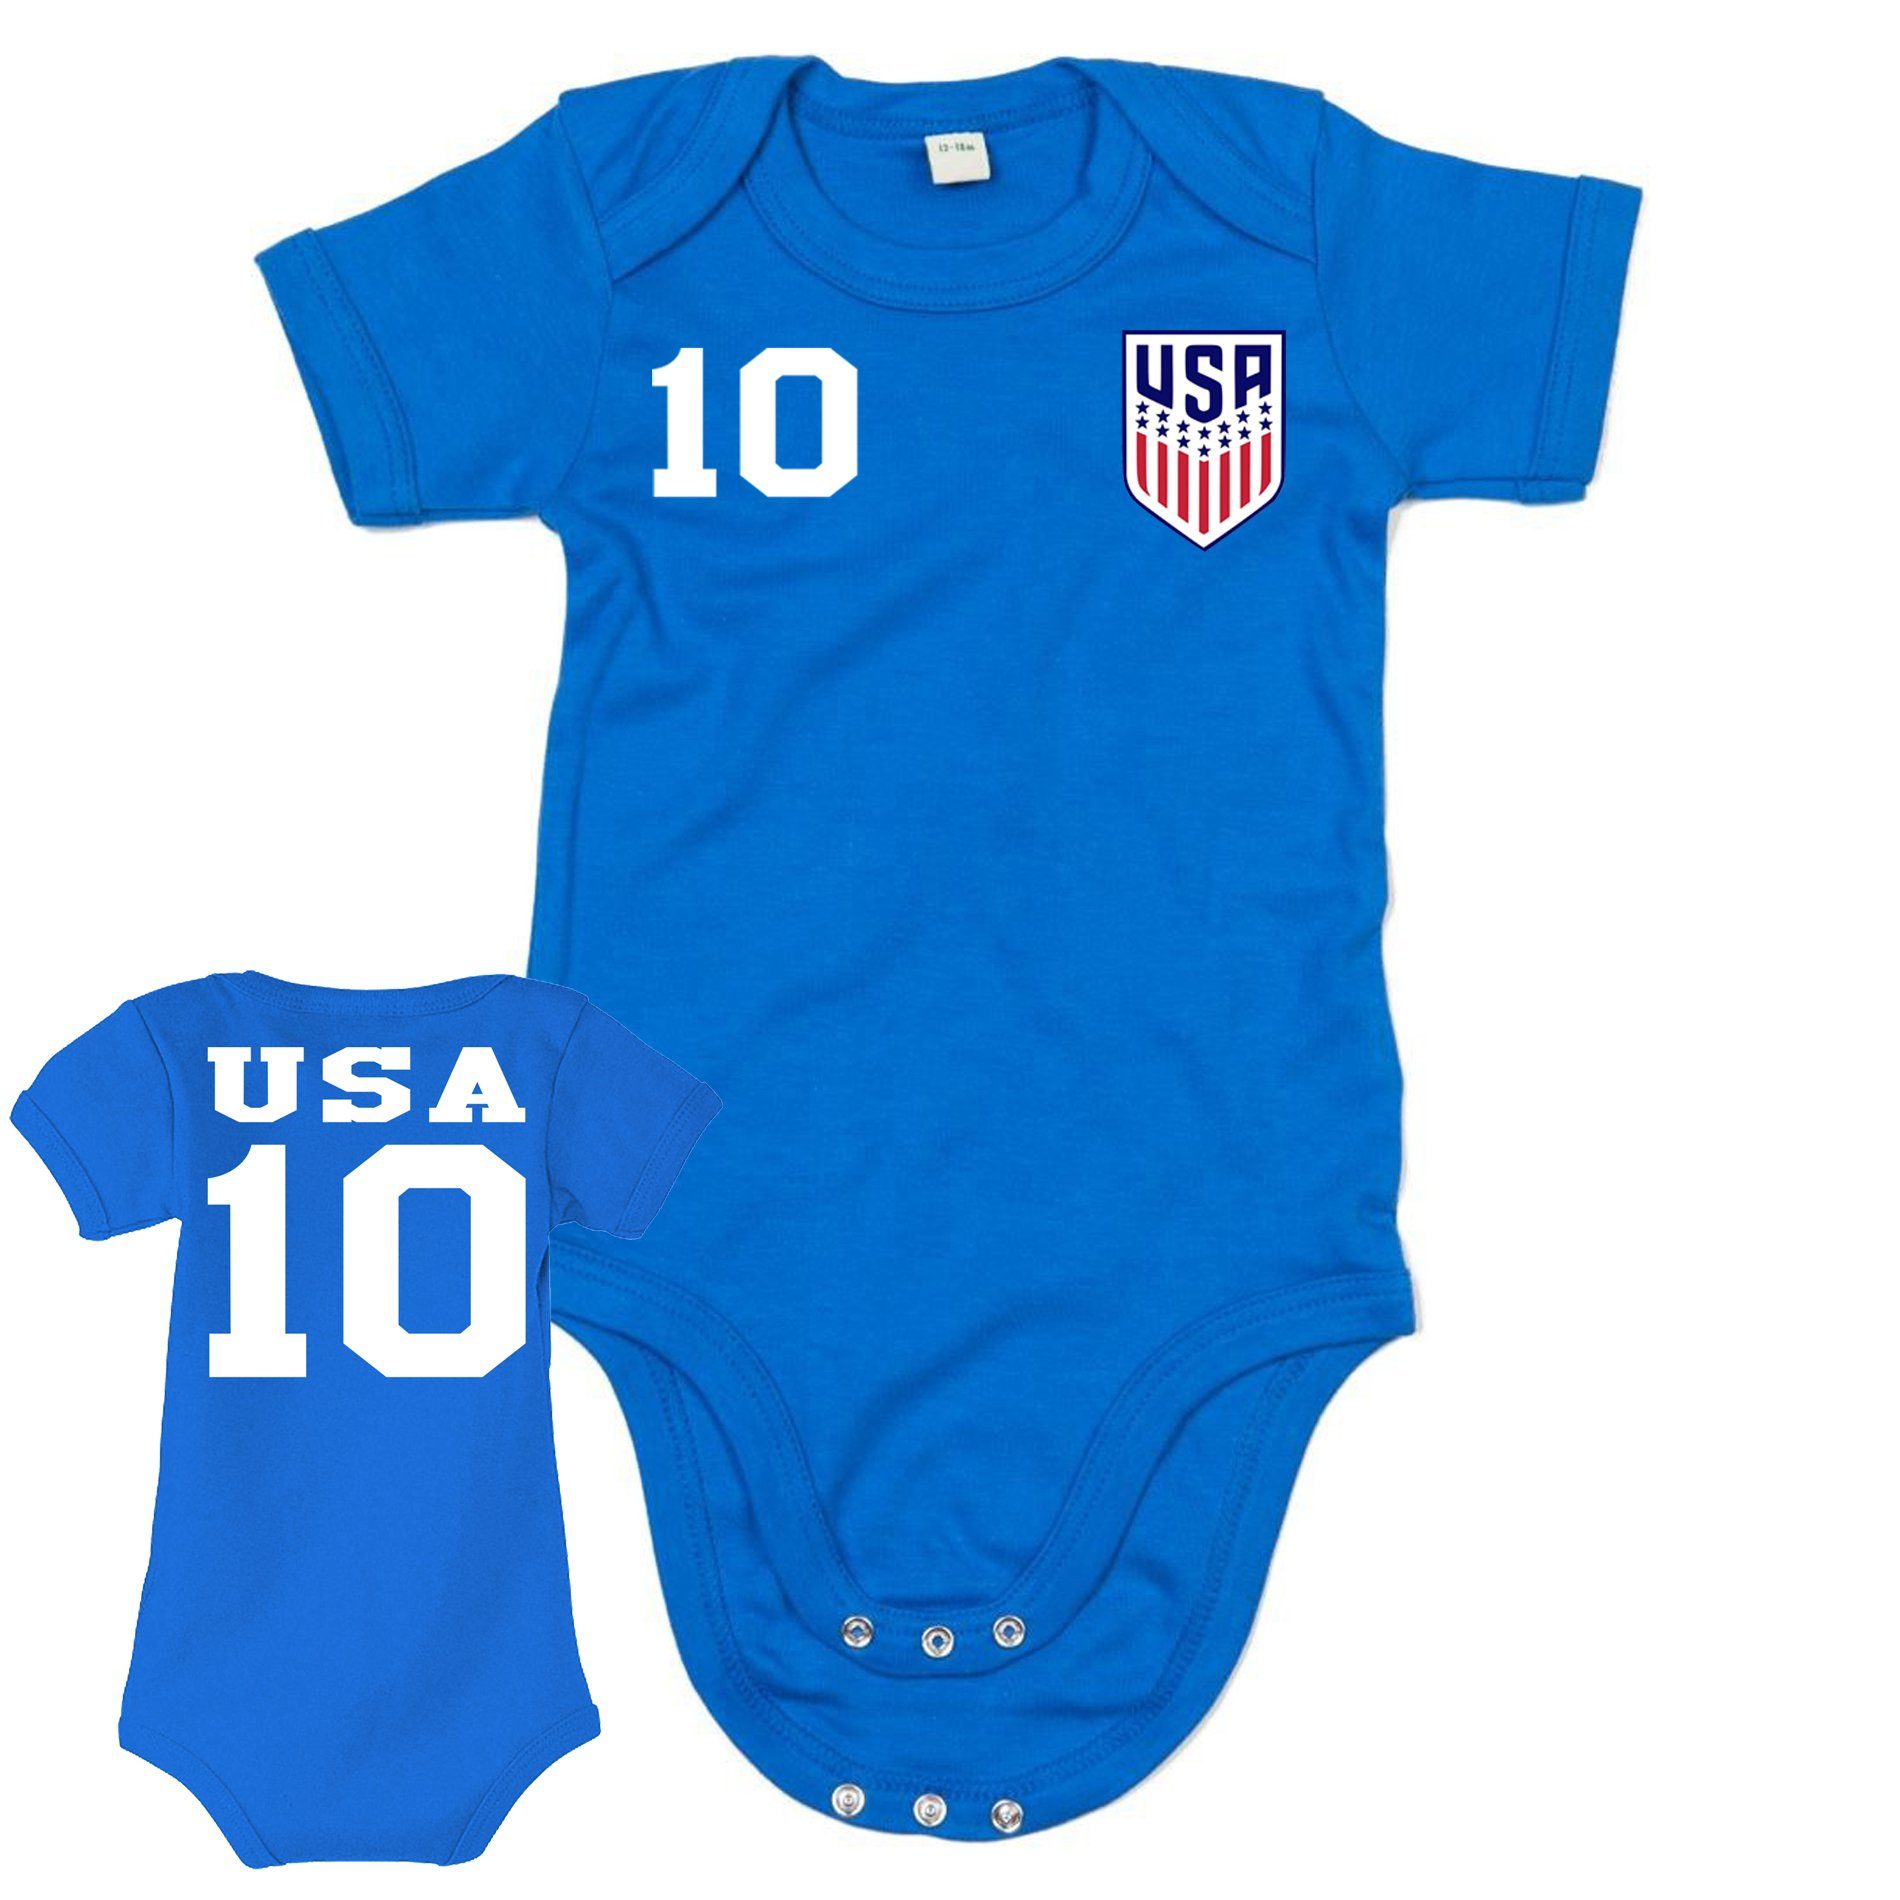 Blondie & Sport Copa USA WM Brownie Kinder Staaten Baby Vereinigte Strampler Trikot Fußball